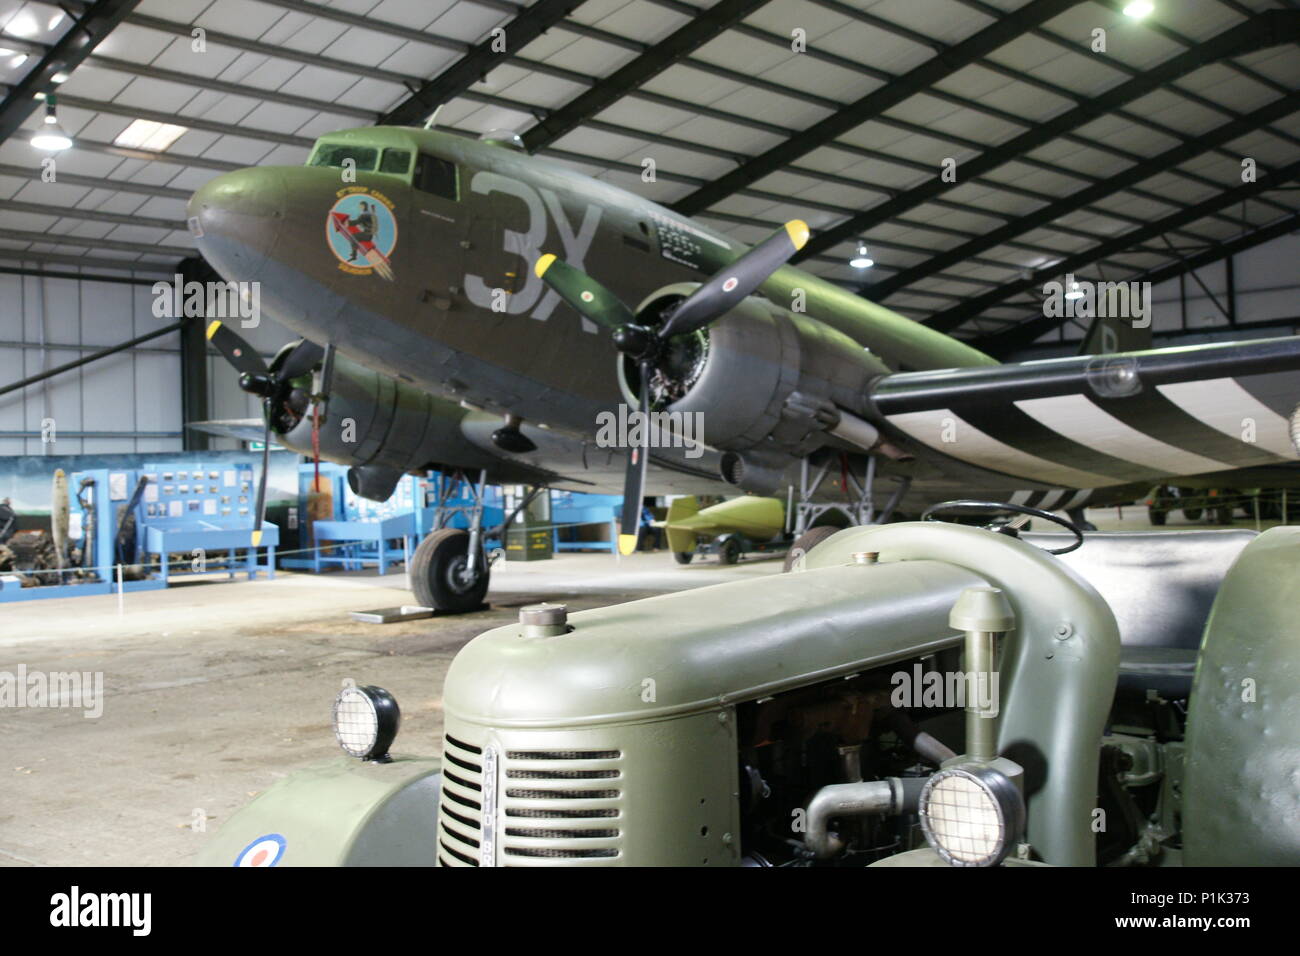 C-47, Dakota, D-day paratrooper transport aircraft Stock Photo